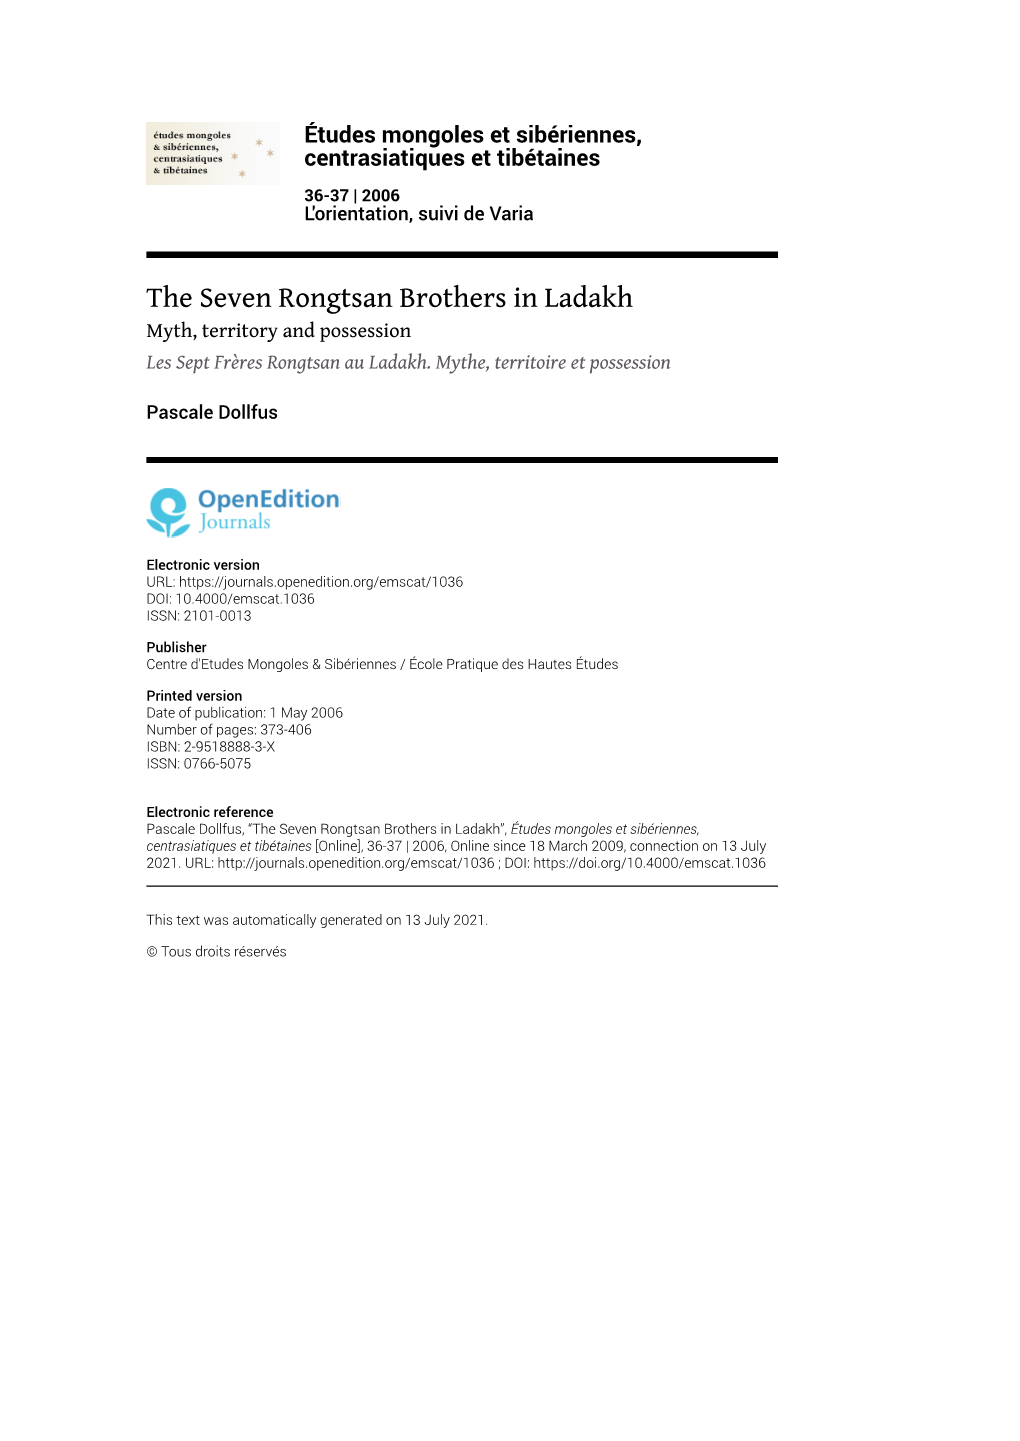 Études Mongoles Et Sibériennes, Centrasiatiques Et Tibétaines, 36-37 | 2006 the Seven Rongtsan Brothers in Ladakh 2